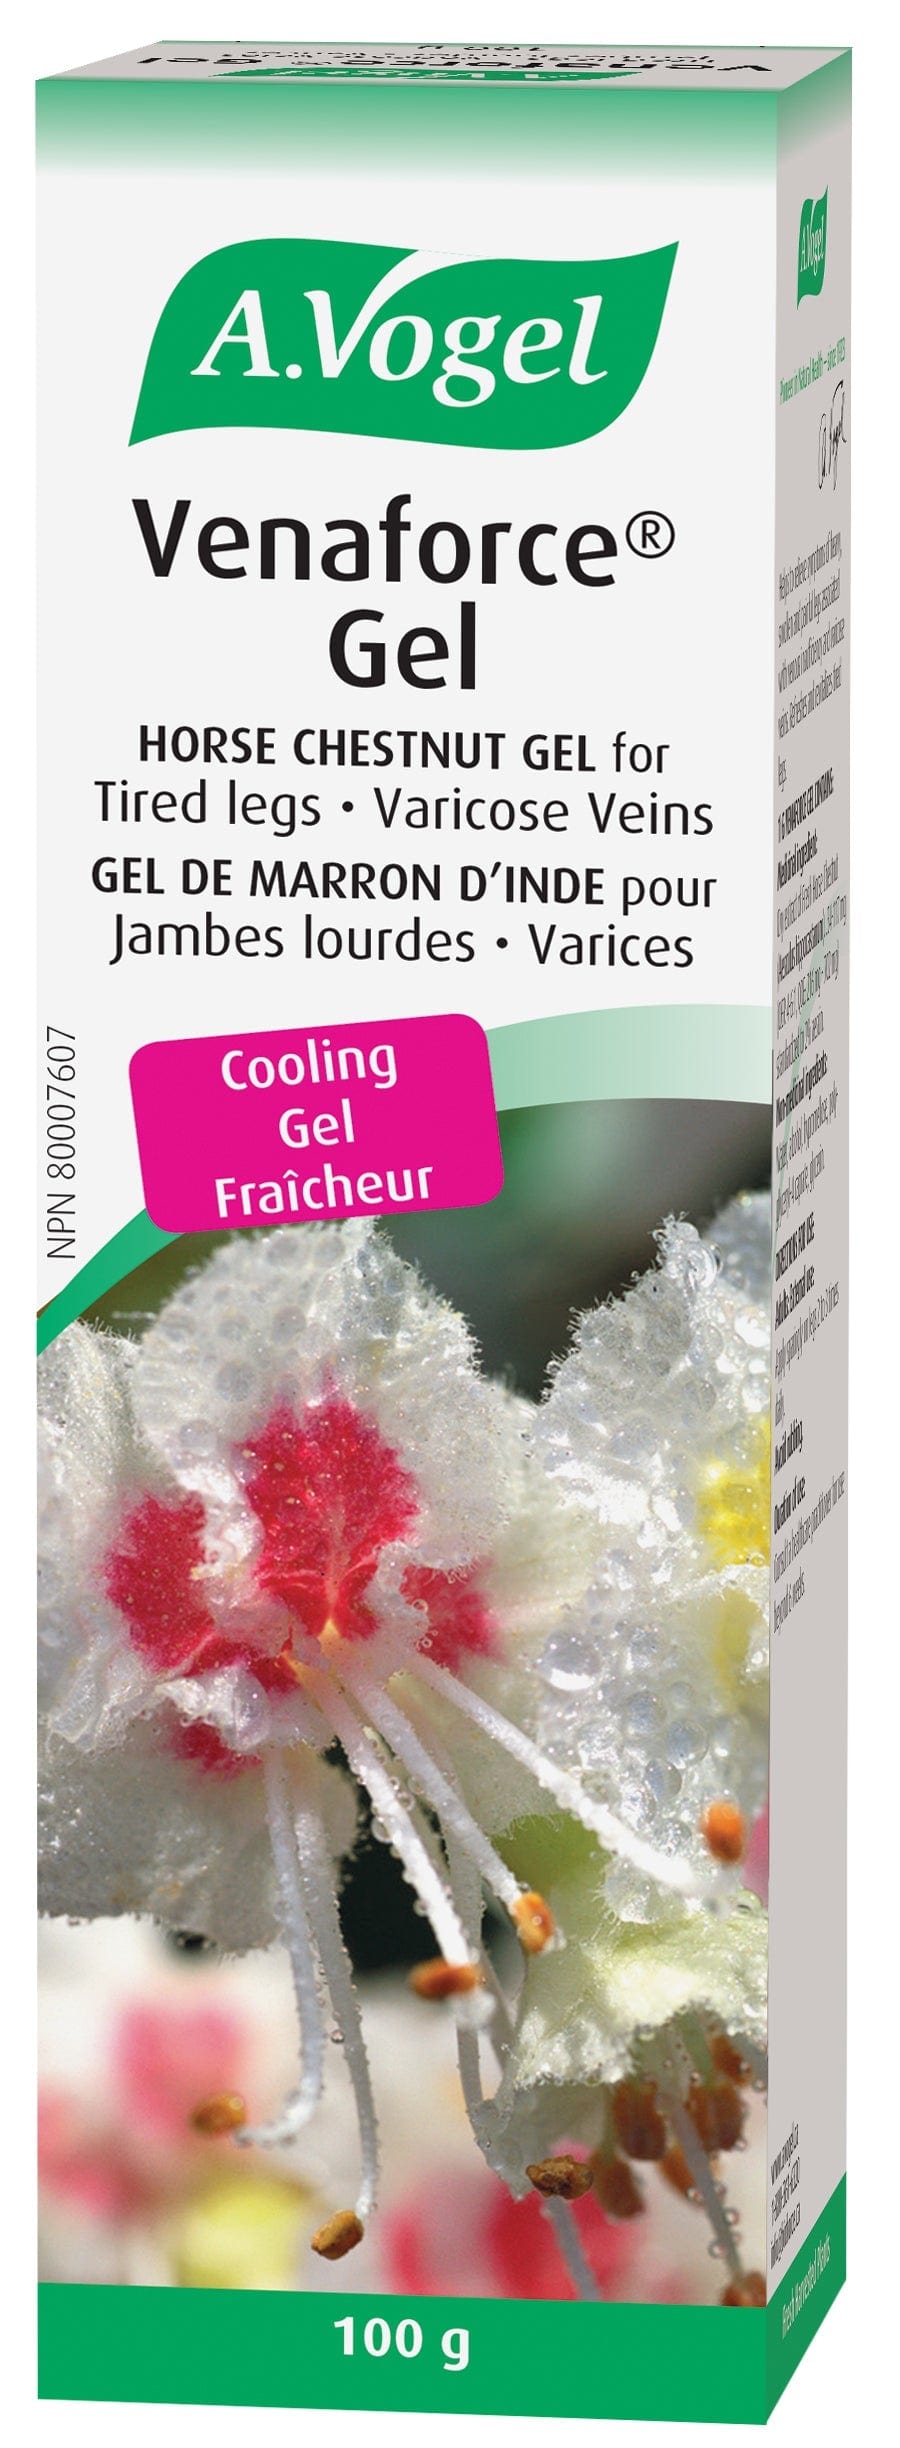 BIOFORCE (A. VOGEL) Soins & beauté Venaforce gel (pour varices) 100g